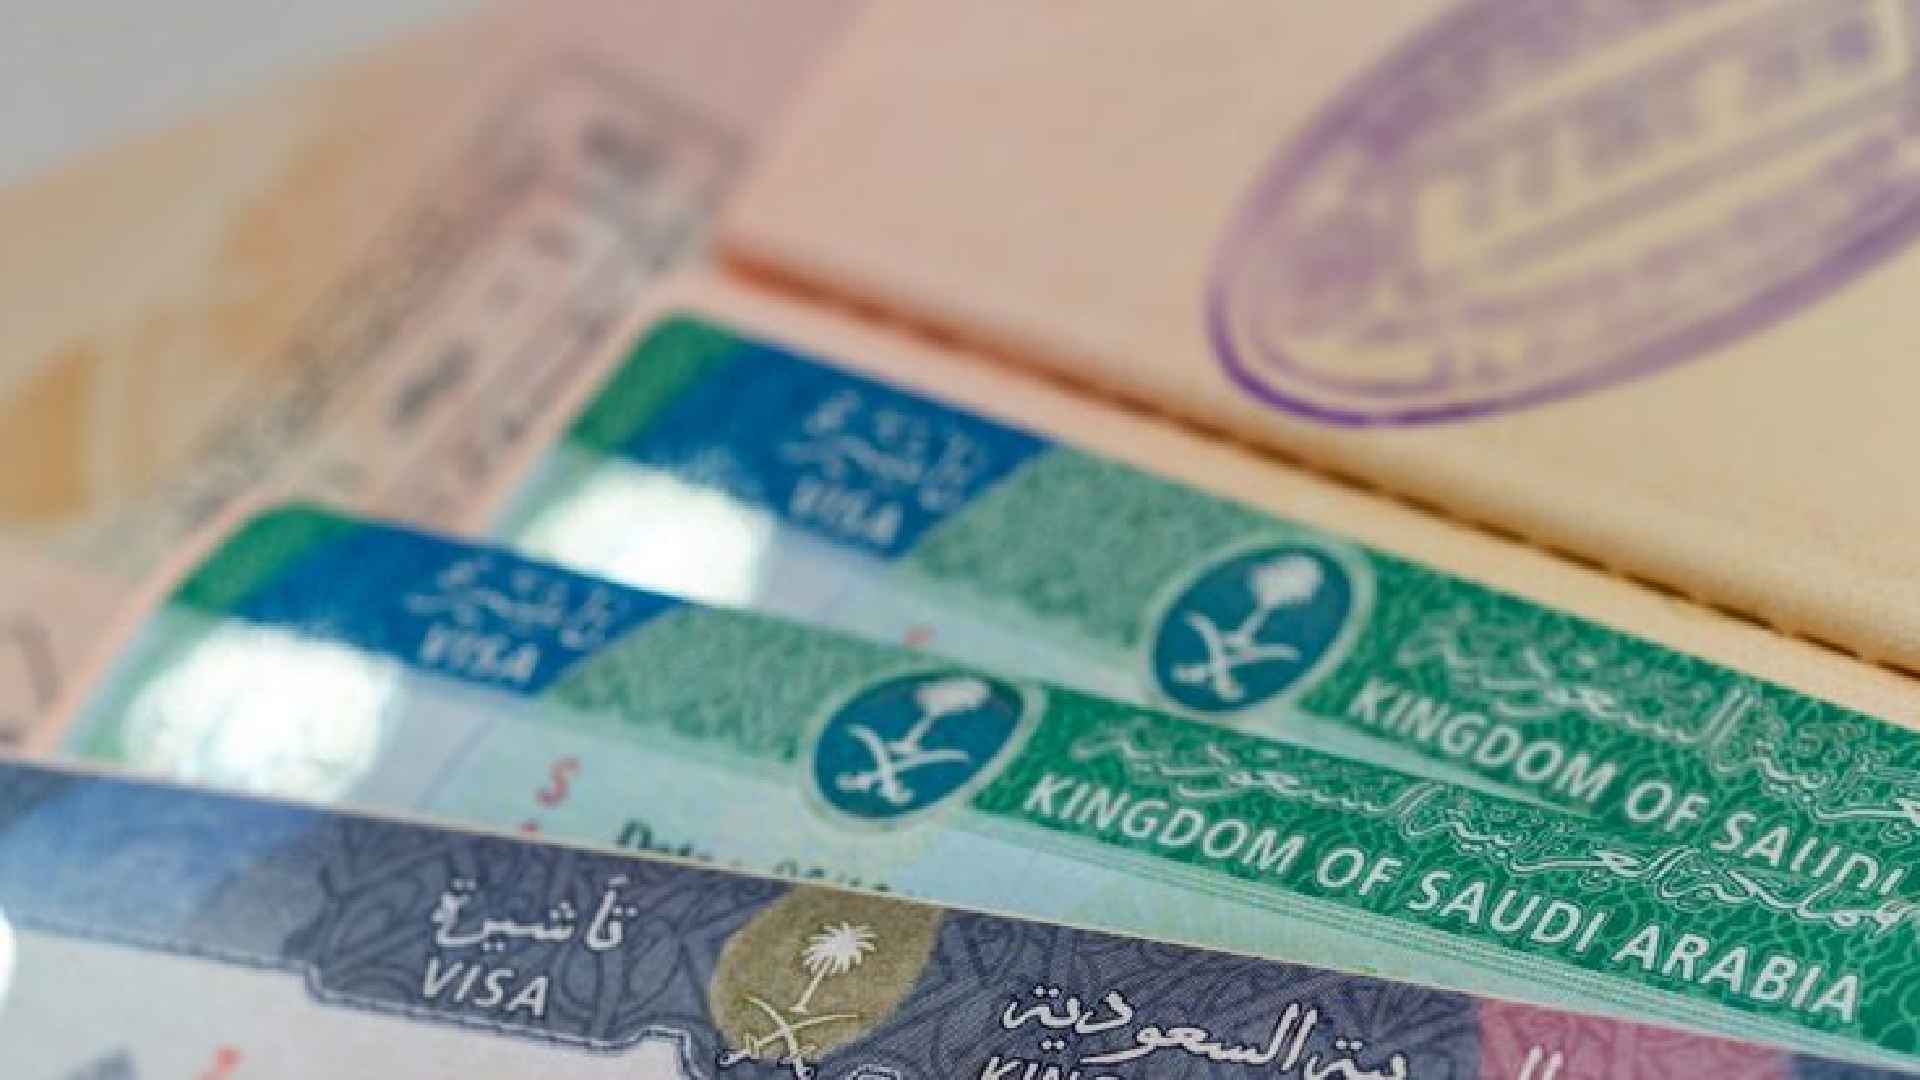 Mofa family visit visa check